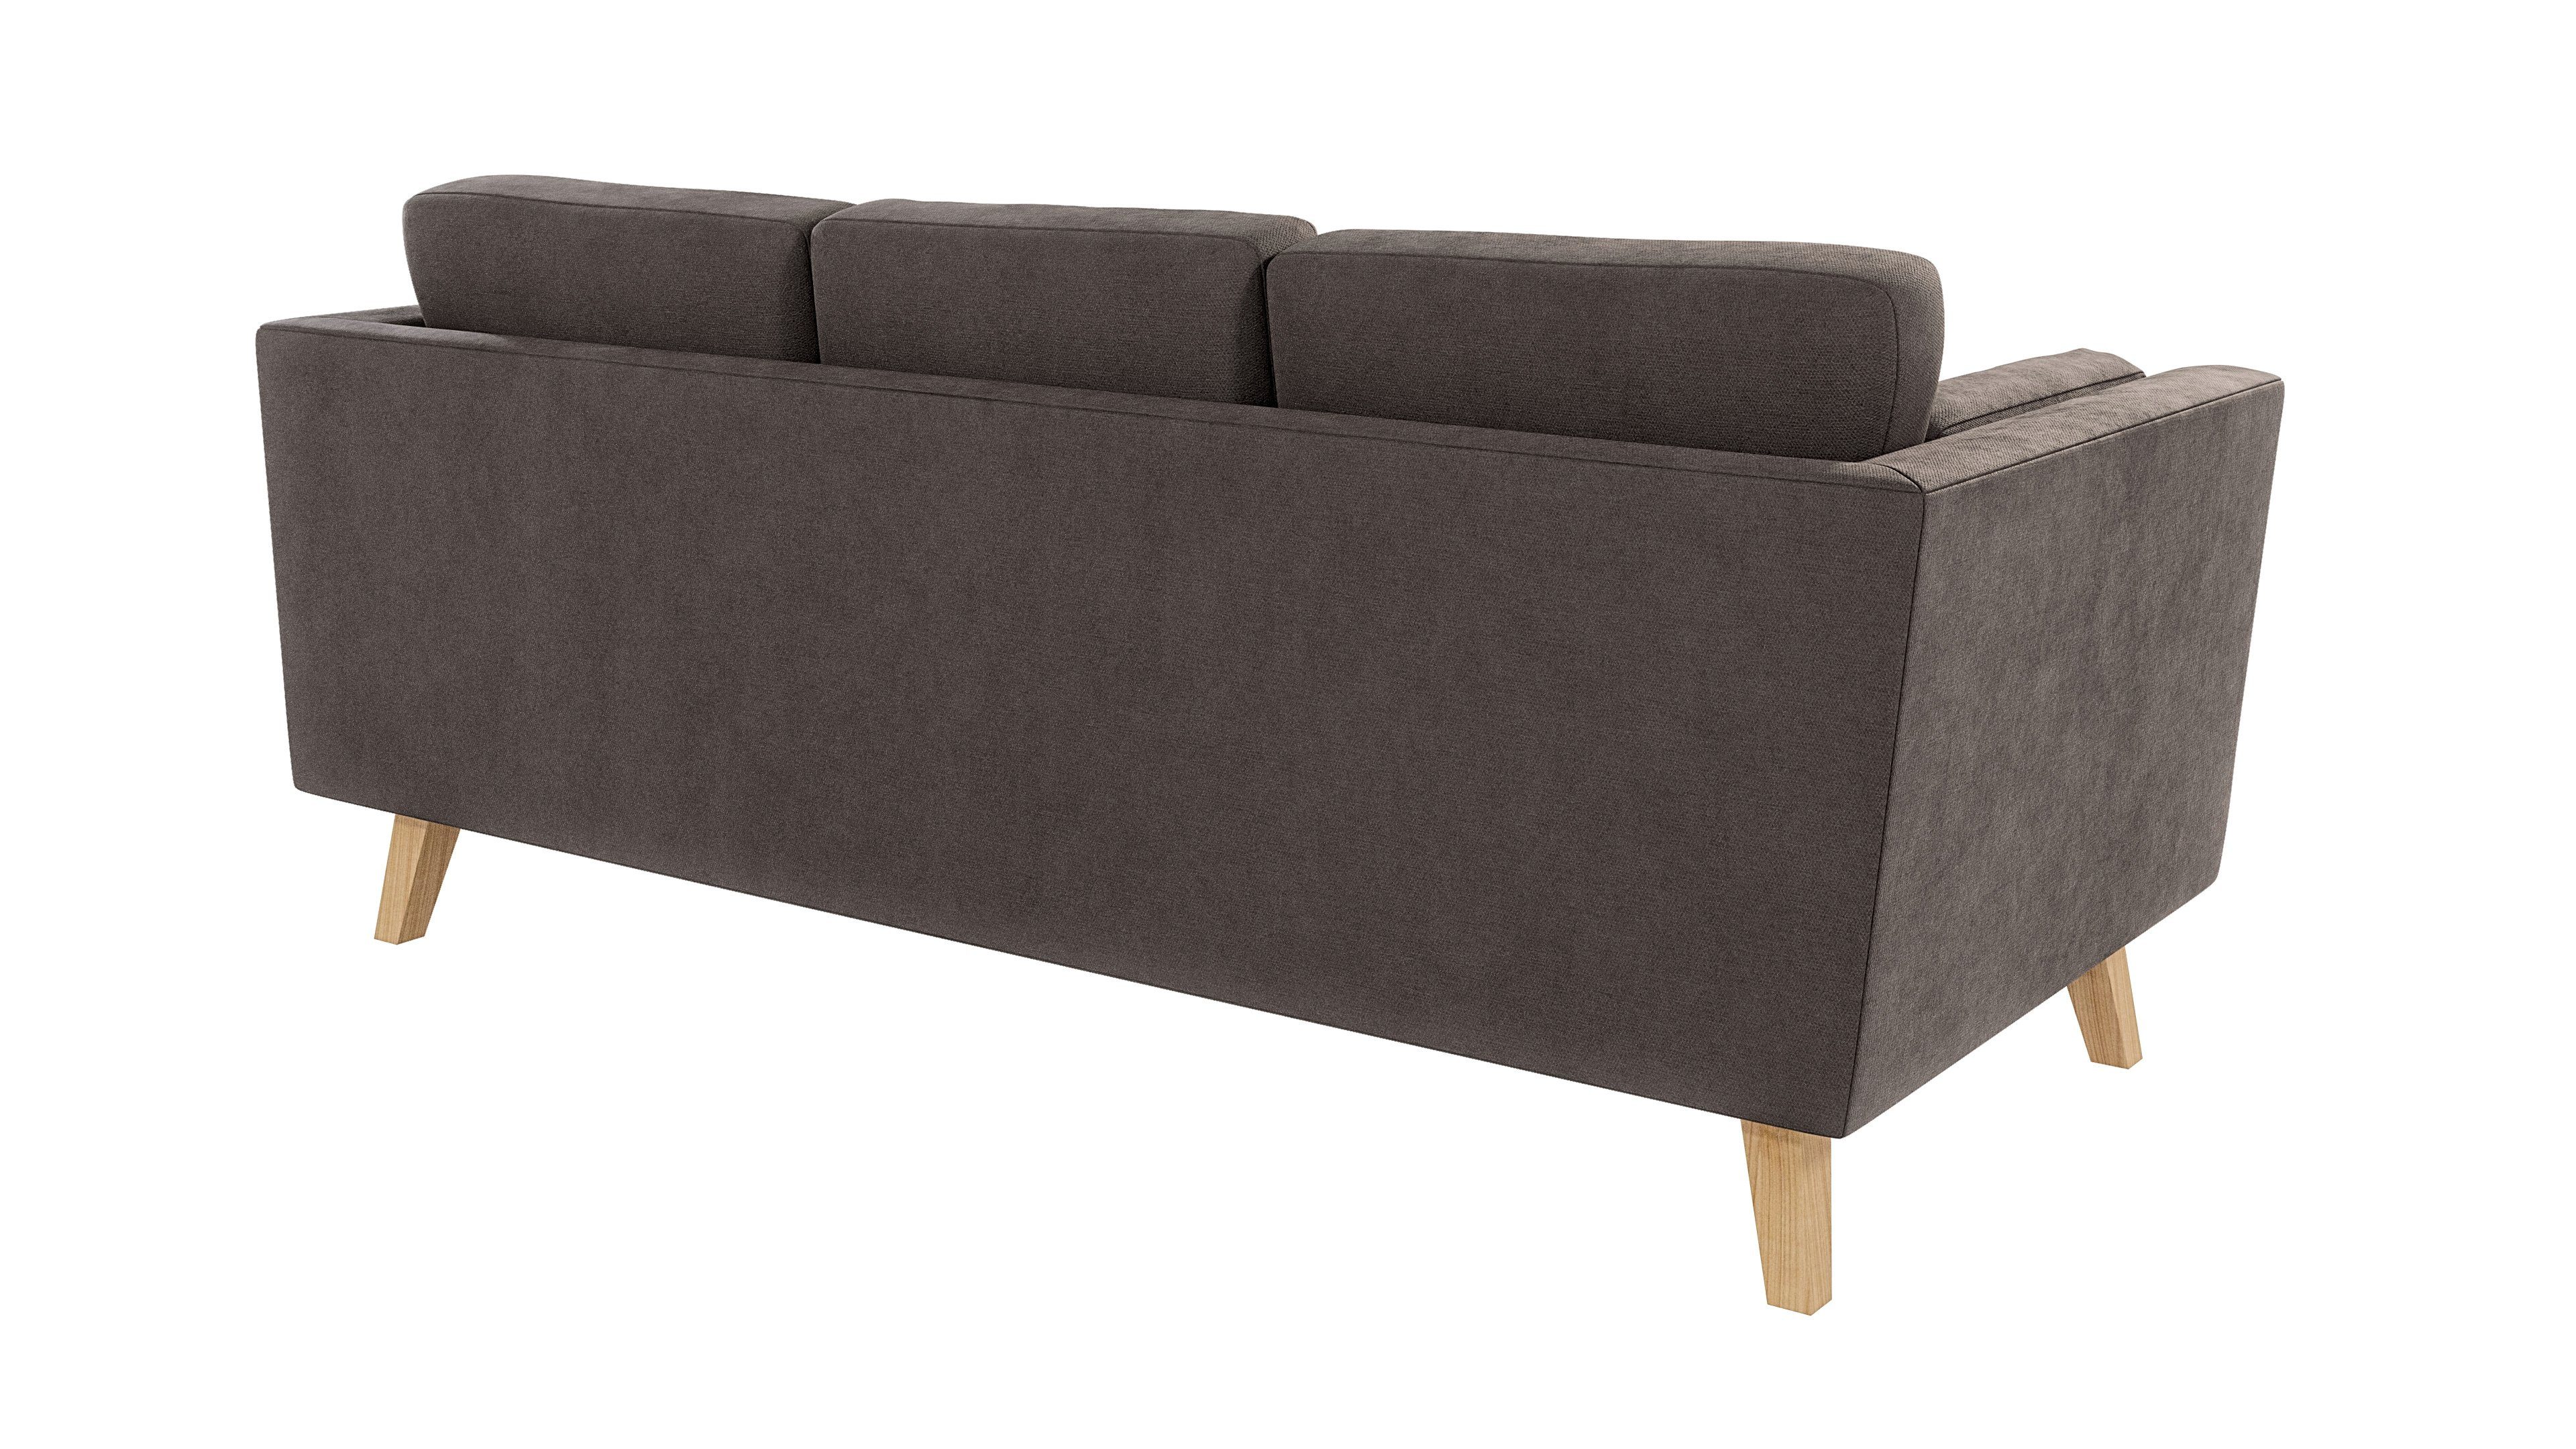 Angeles mit Khaki Sofa - Braun S-Style 3-Sitzer Wellenfederung Design, im skandinavischen Möbel